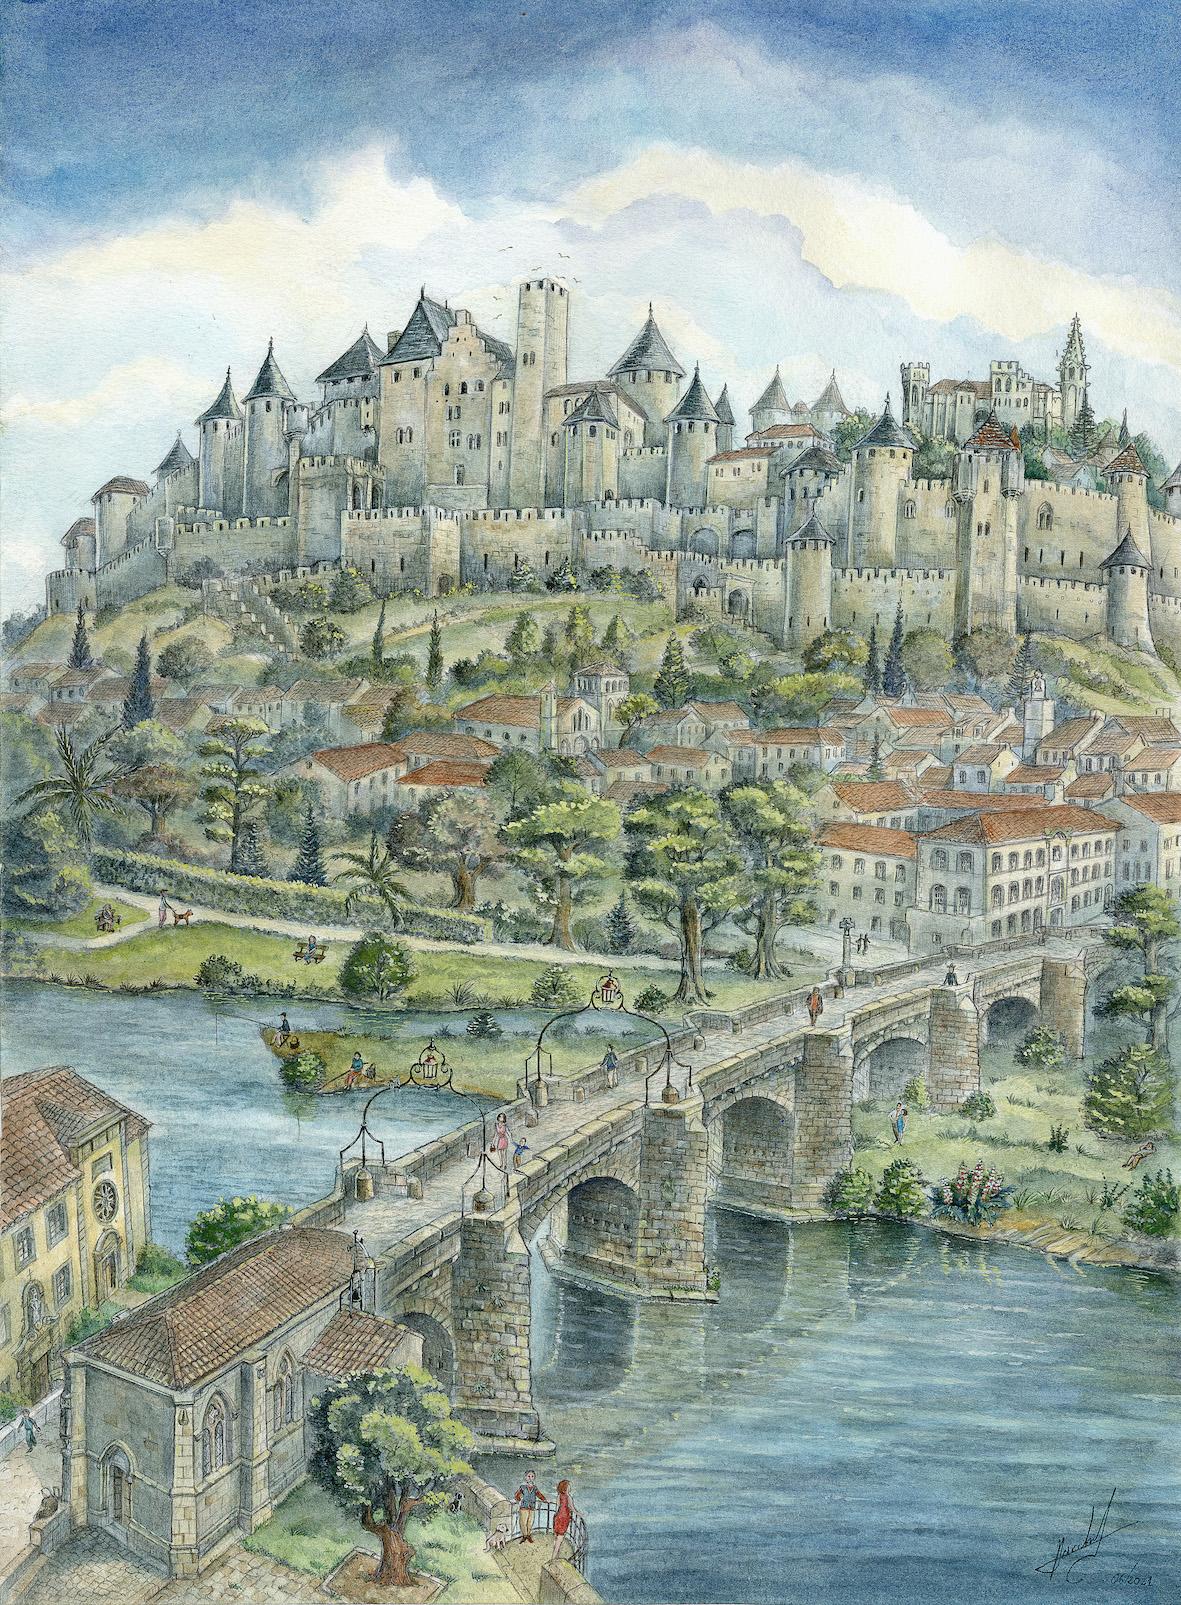 Cite de carcassonne